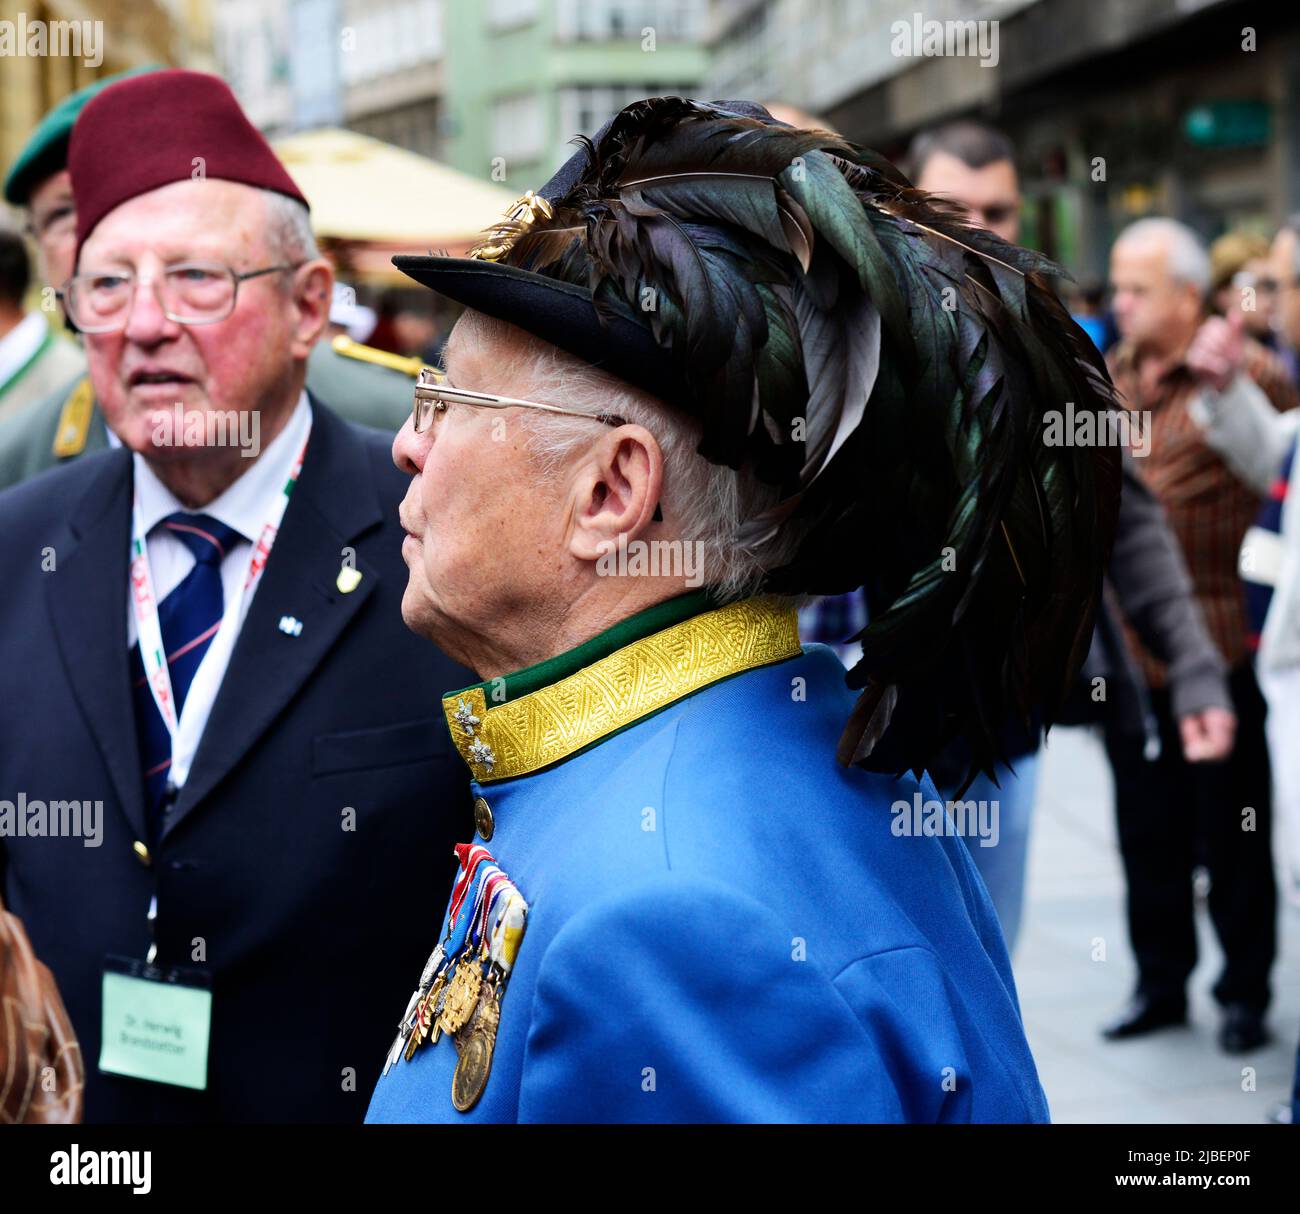 6 juin 2013. Deux anciens combattants de la guerre mondiale se réunissent pour une cérémonie du mémorial de la flamme éternelle à Sarajevo, en Bosnie-Herzégovine. Banque D'Images